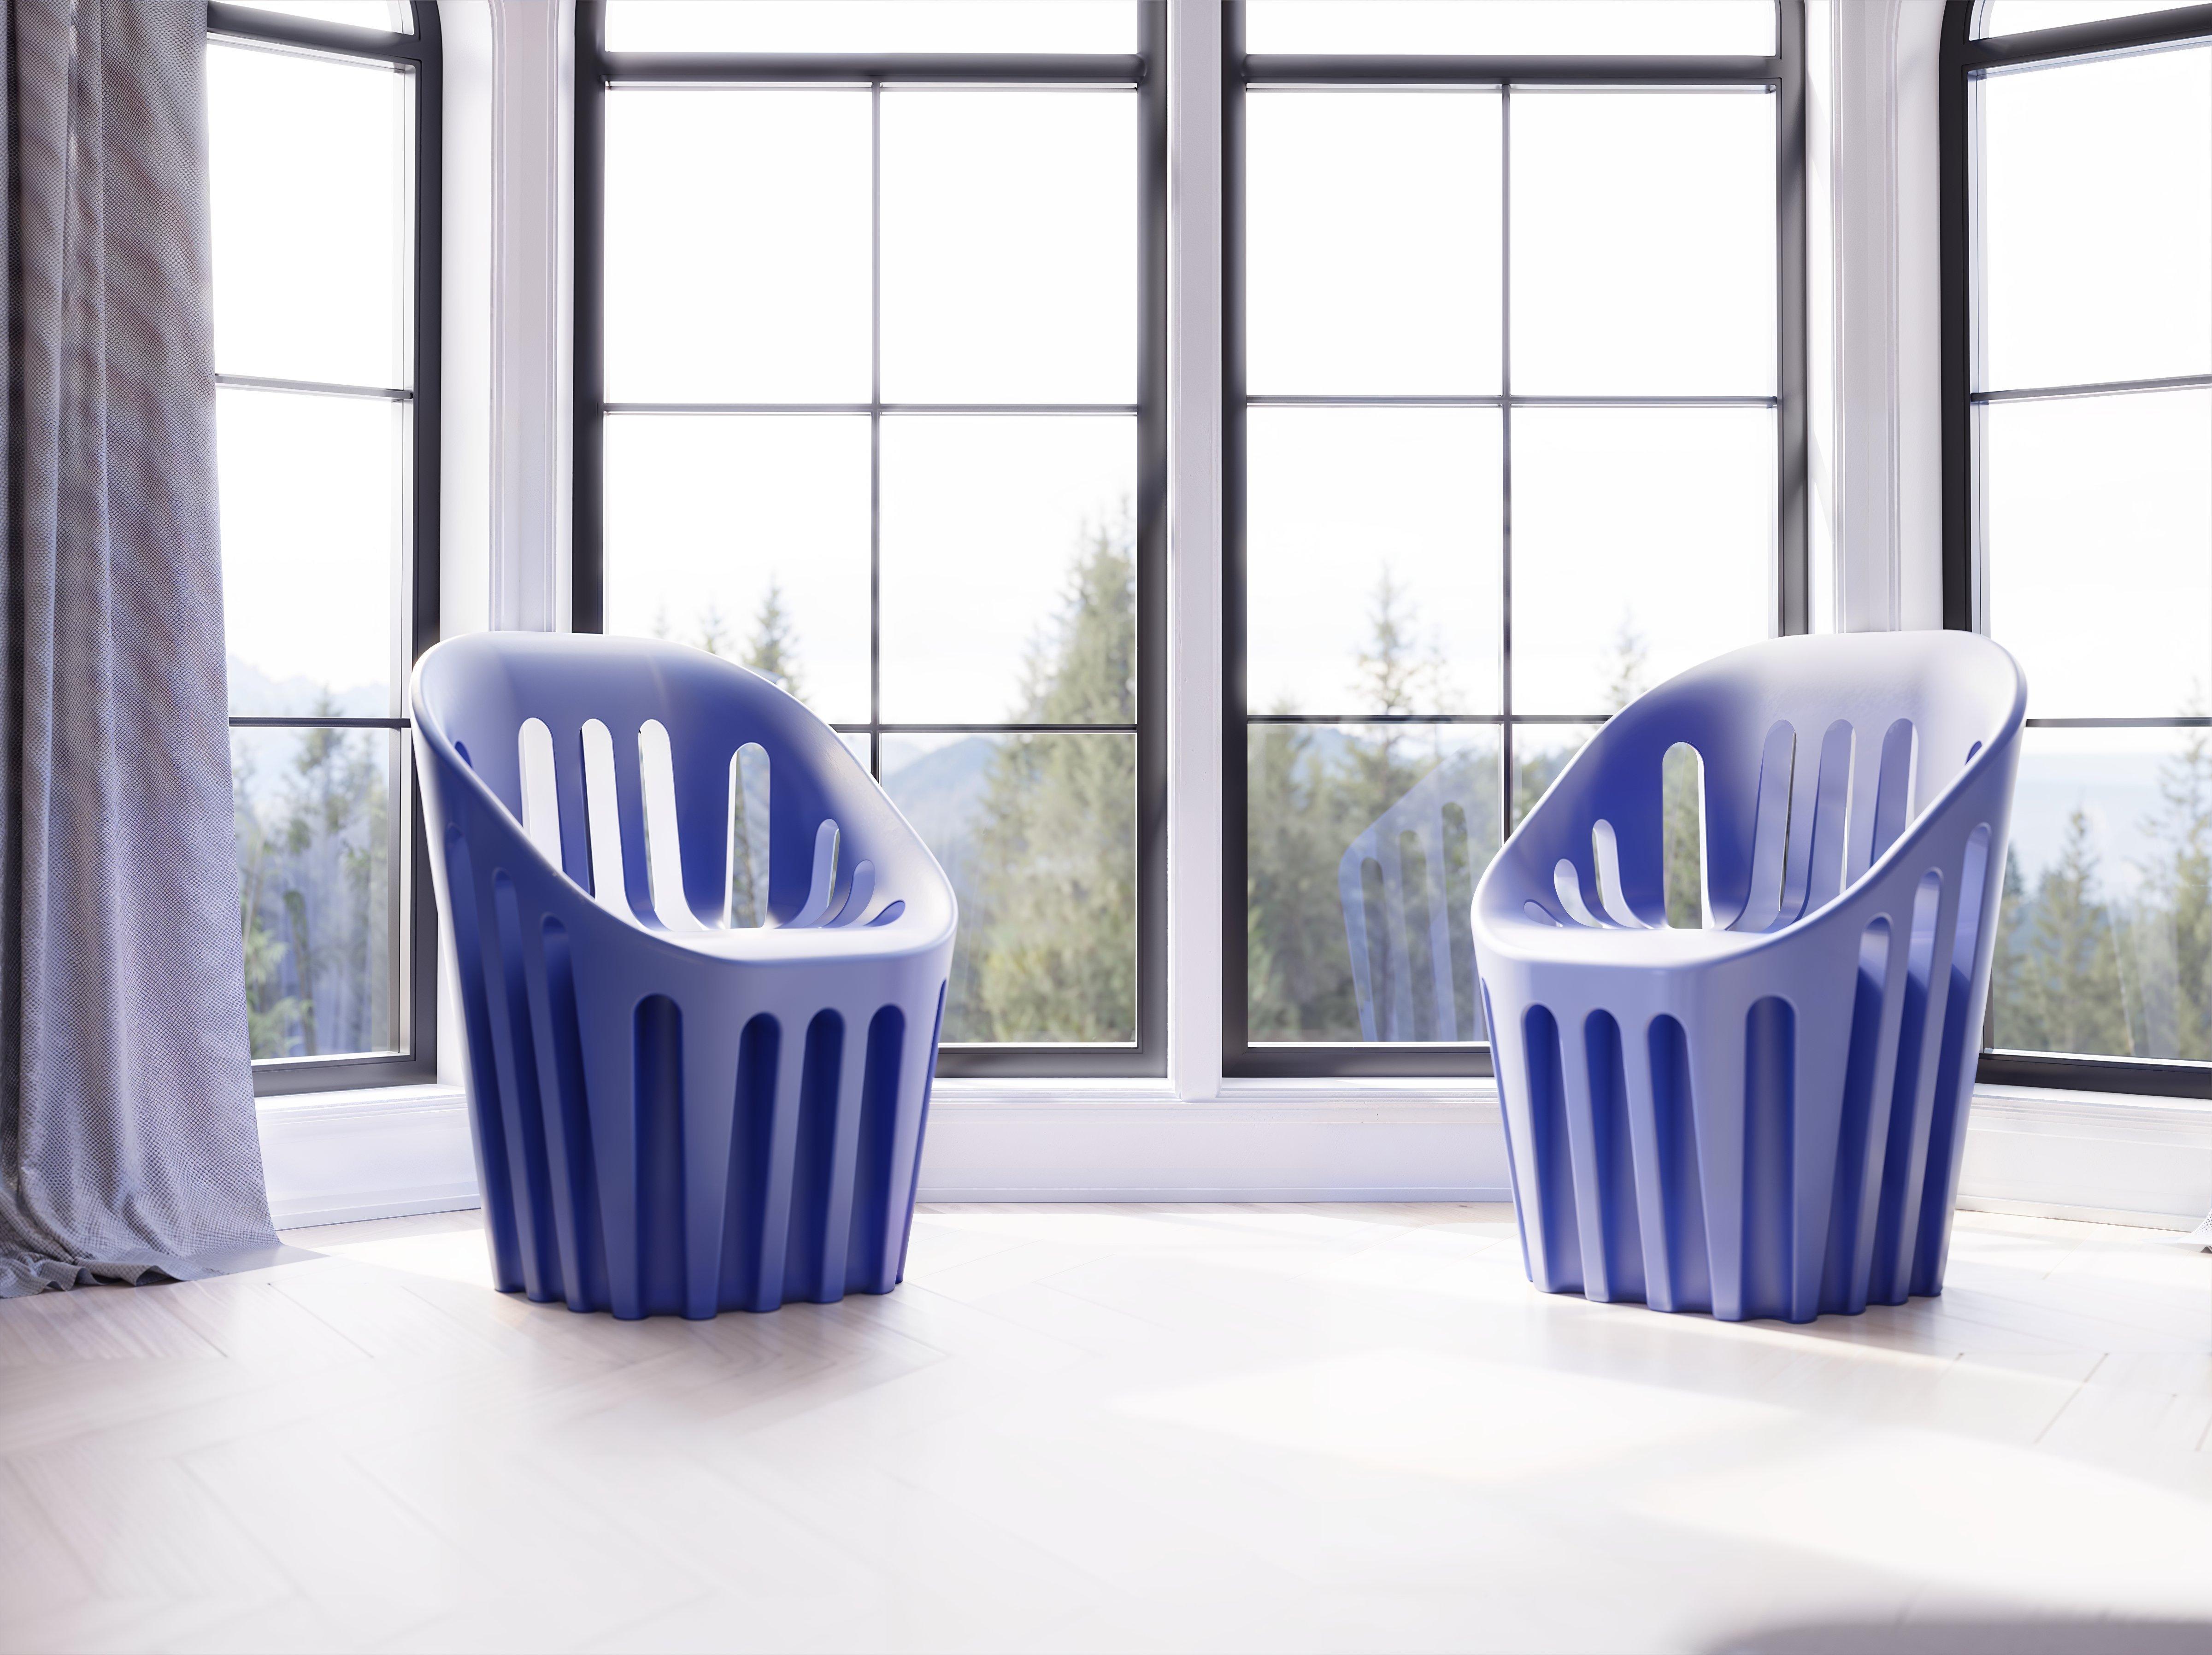 Sweet Fuchsia Coliseum Chair von Alvaro Uribe
Abmessungen: T 65 x B 66 x H 86 cm. Sitzhöhe: 45 cm.
MATERIALEN: Polyethylen.
Gewicht: 11 kg.

Erhältlich in verschiedenen Farbvarianten. Dieses Produkt ist für die Verwendung im Innen- und Außenbereich